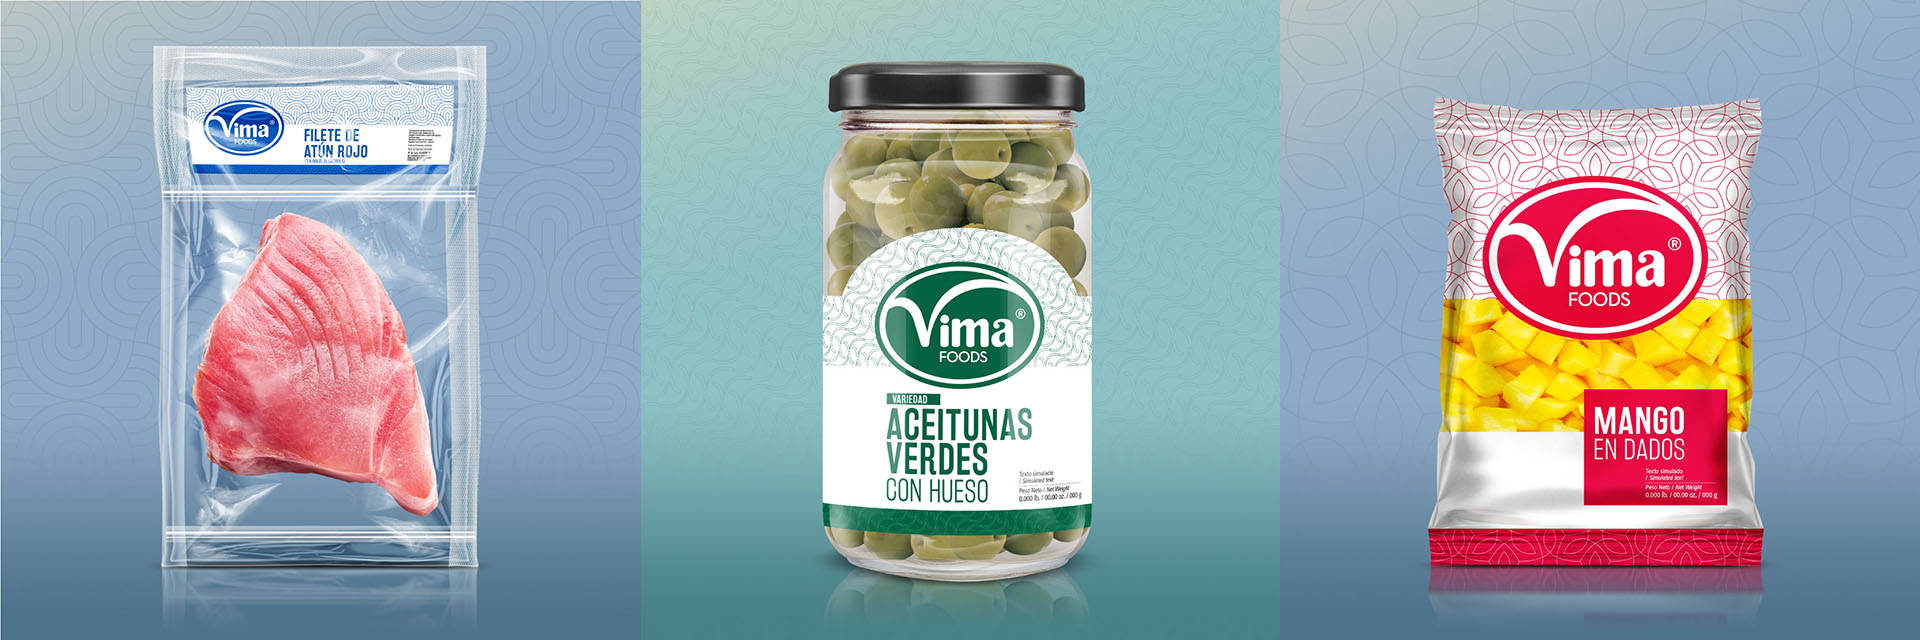 Identidad corporativa, packaging y diseño de etiquetas para productos alimenticios Vima